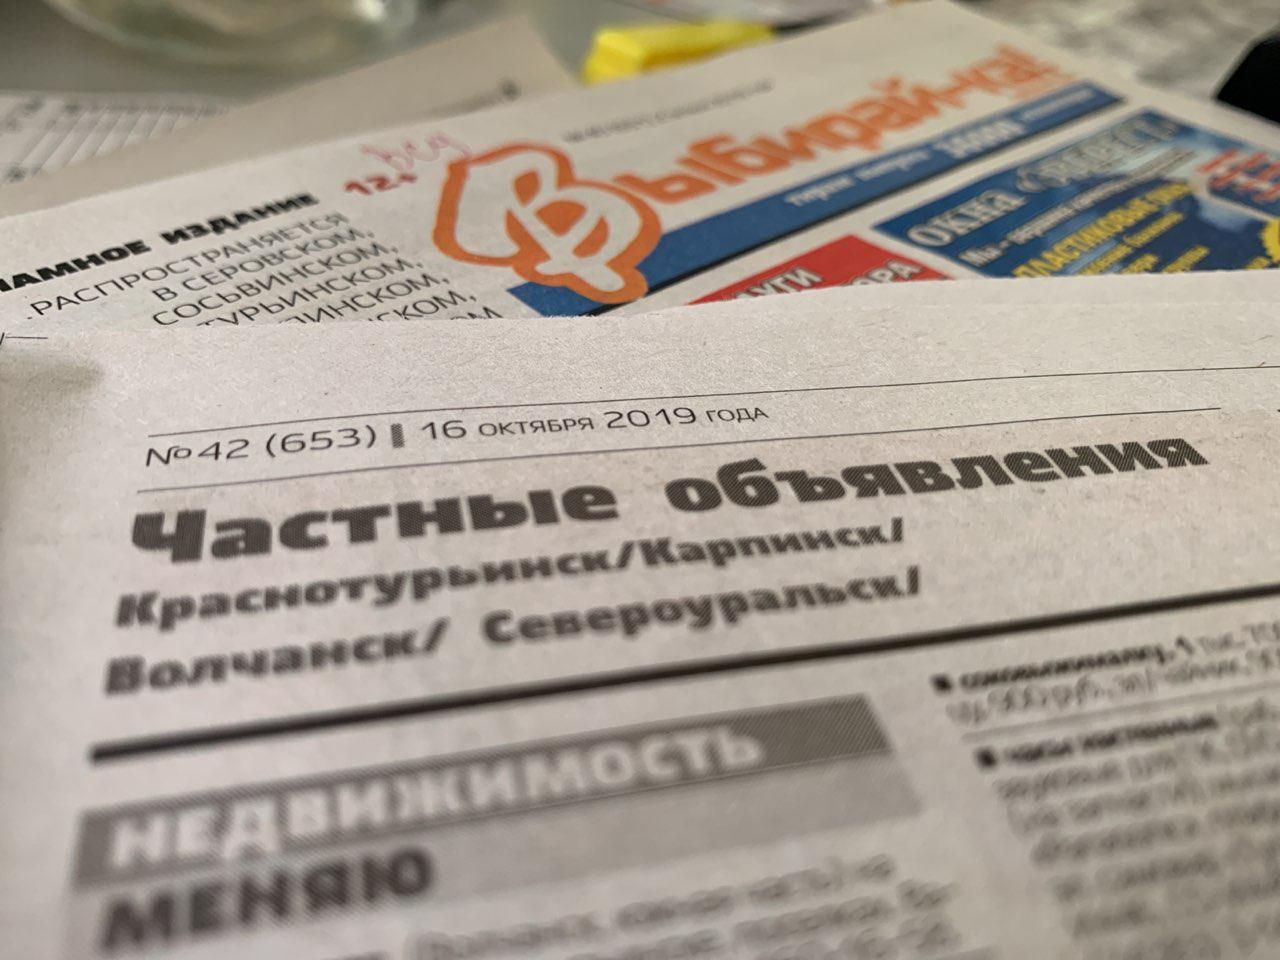 Объявления из газеты "Выбирай-ка!" (Краснотурьинск / Североуральск) № 43 от 23 октября 2019 года